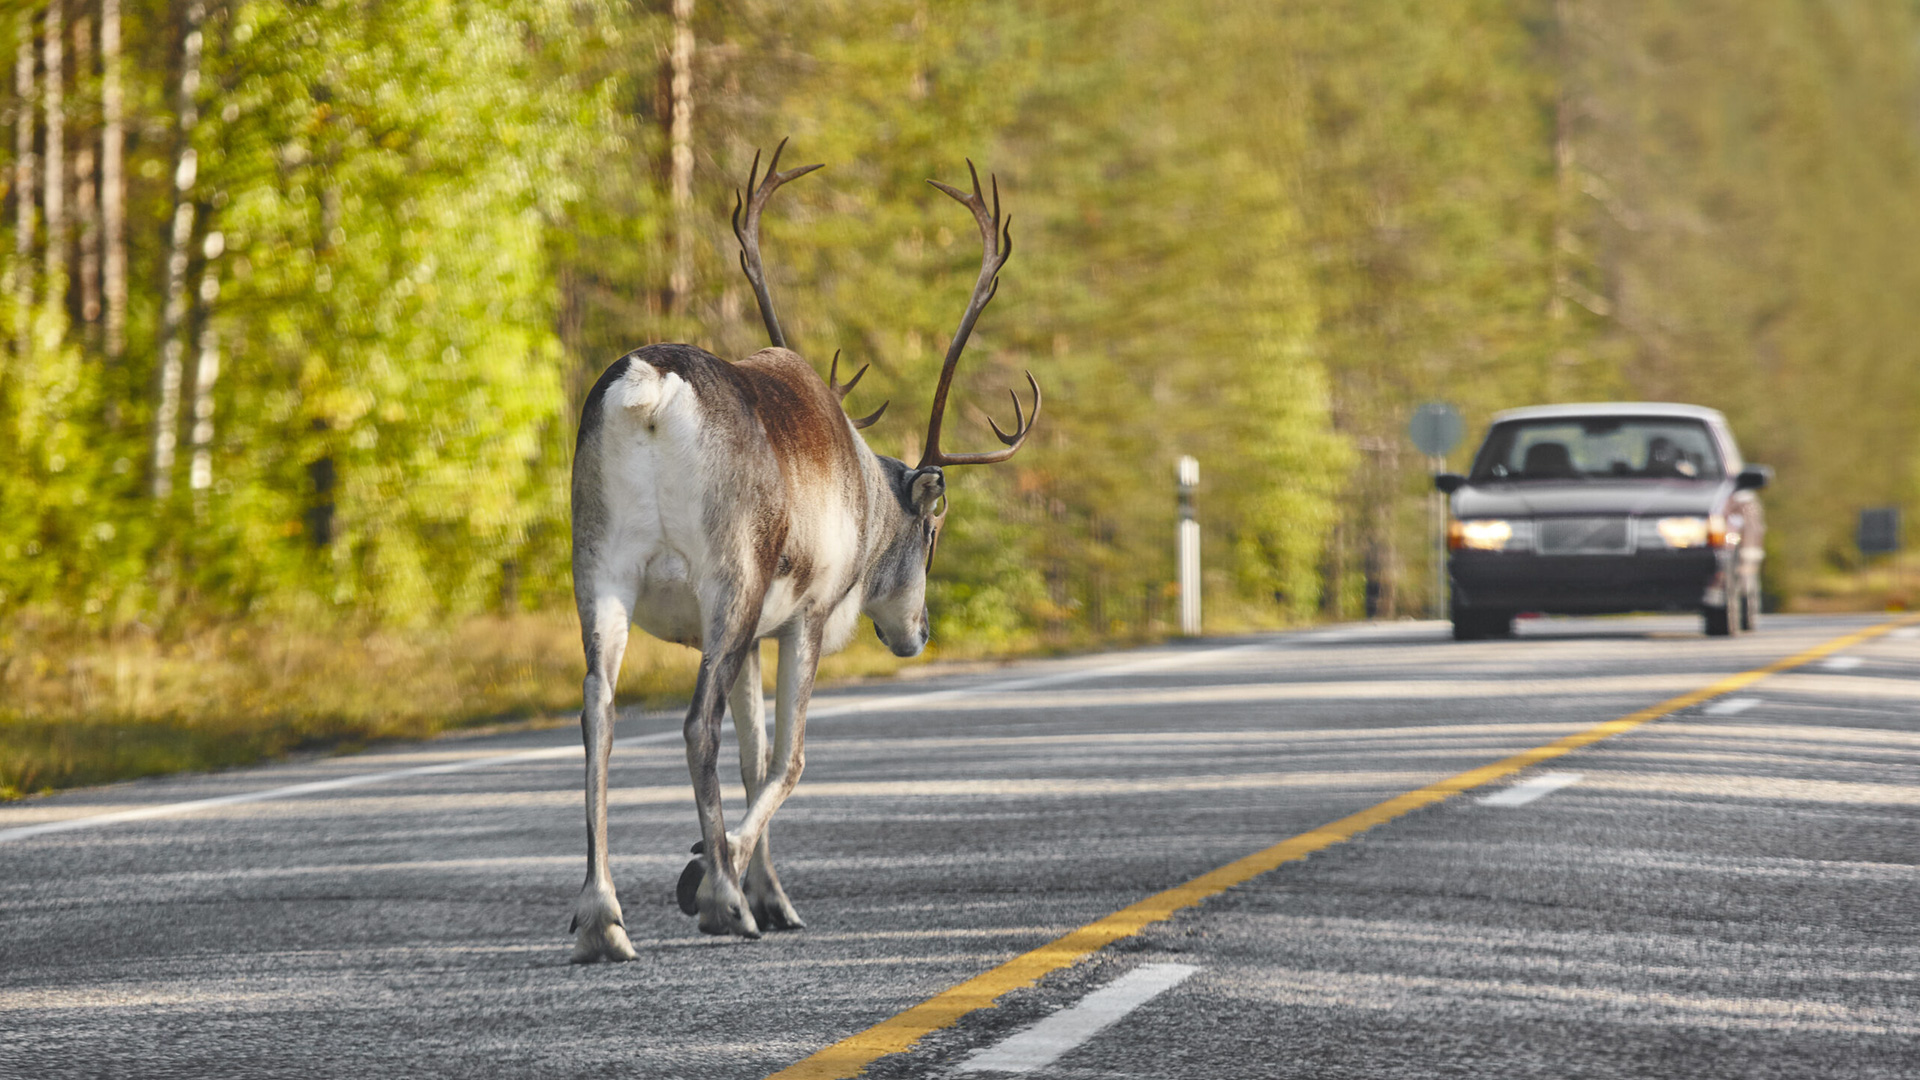 도로를 건너고 있는 야생동물의 모습